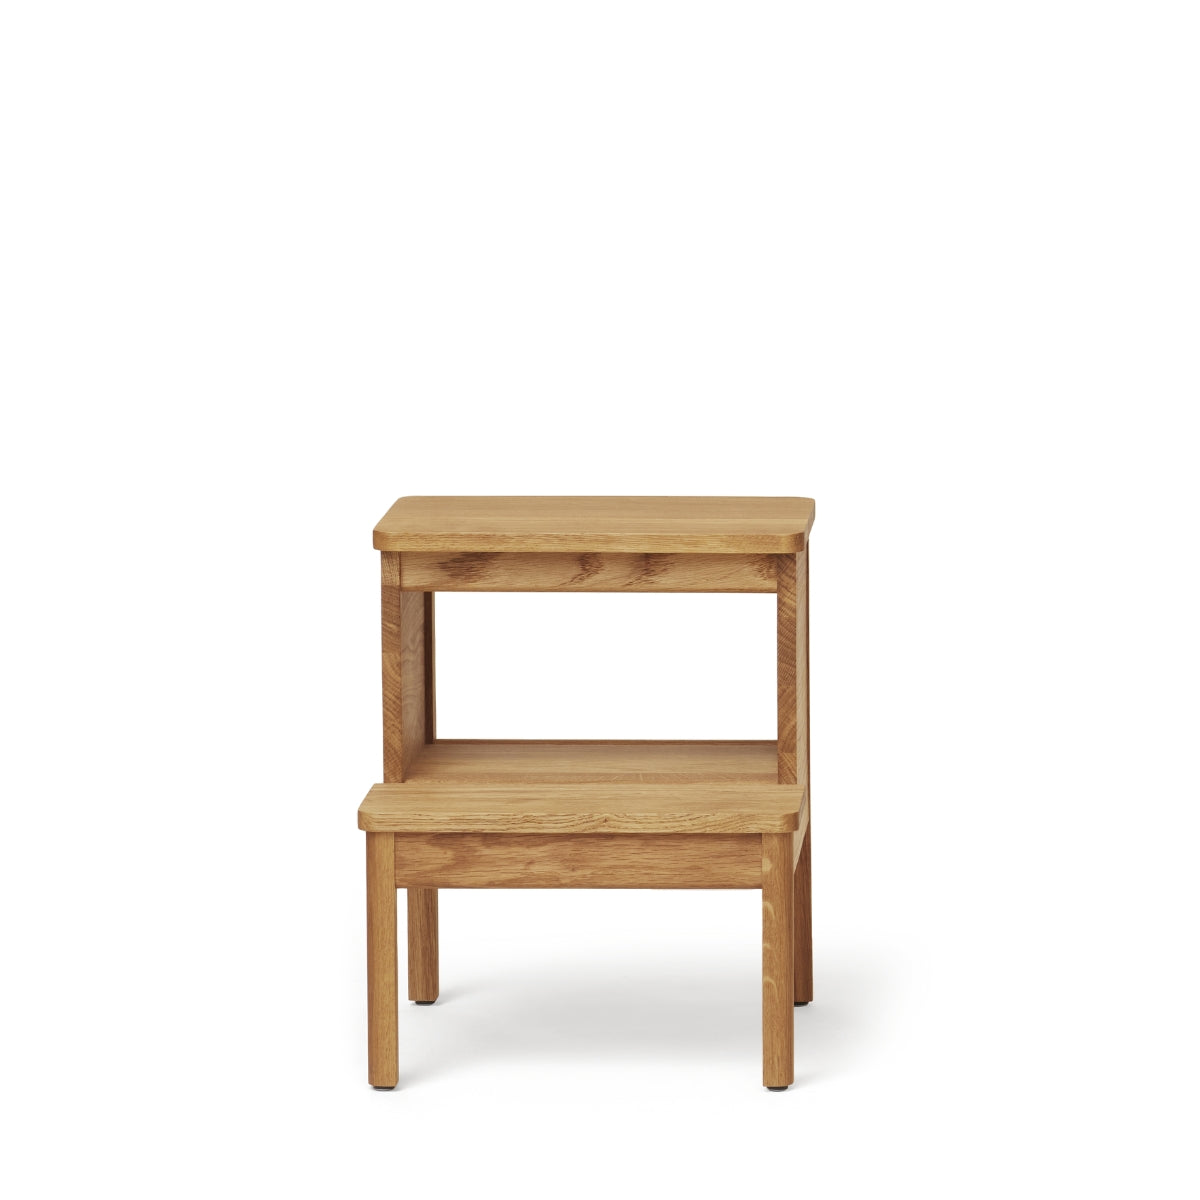 Form & Refine | A Line Stepstool